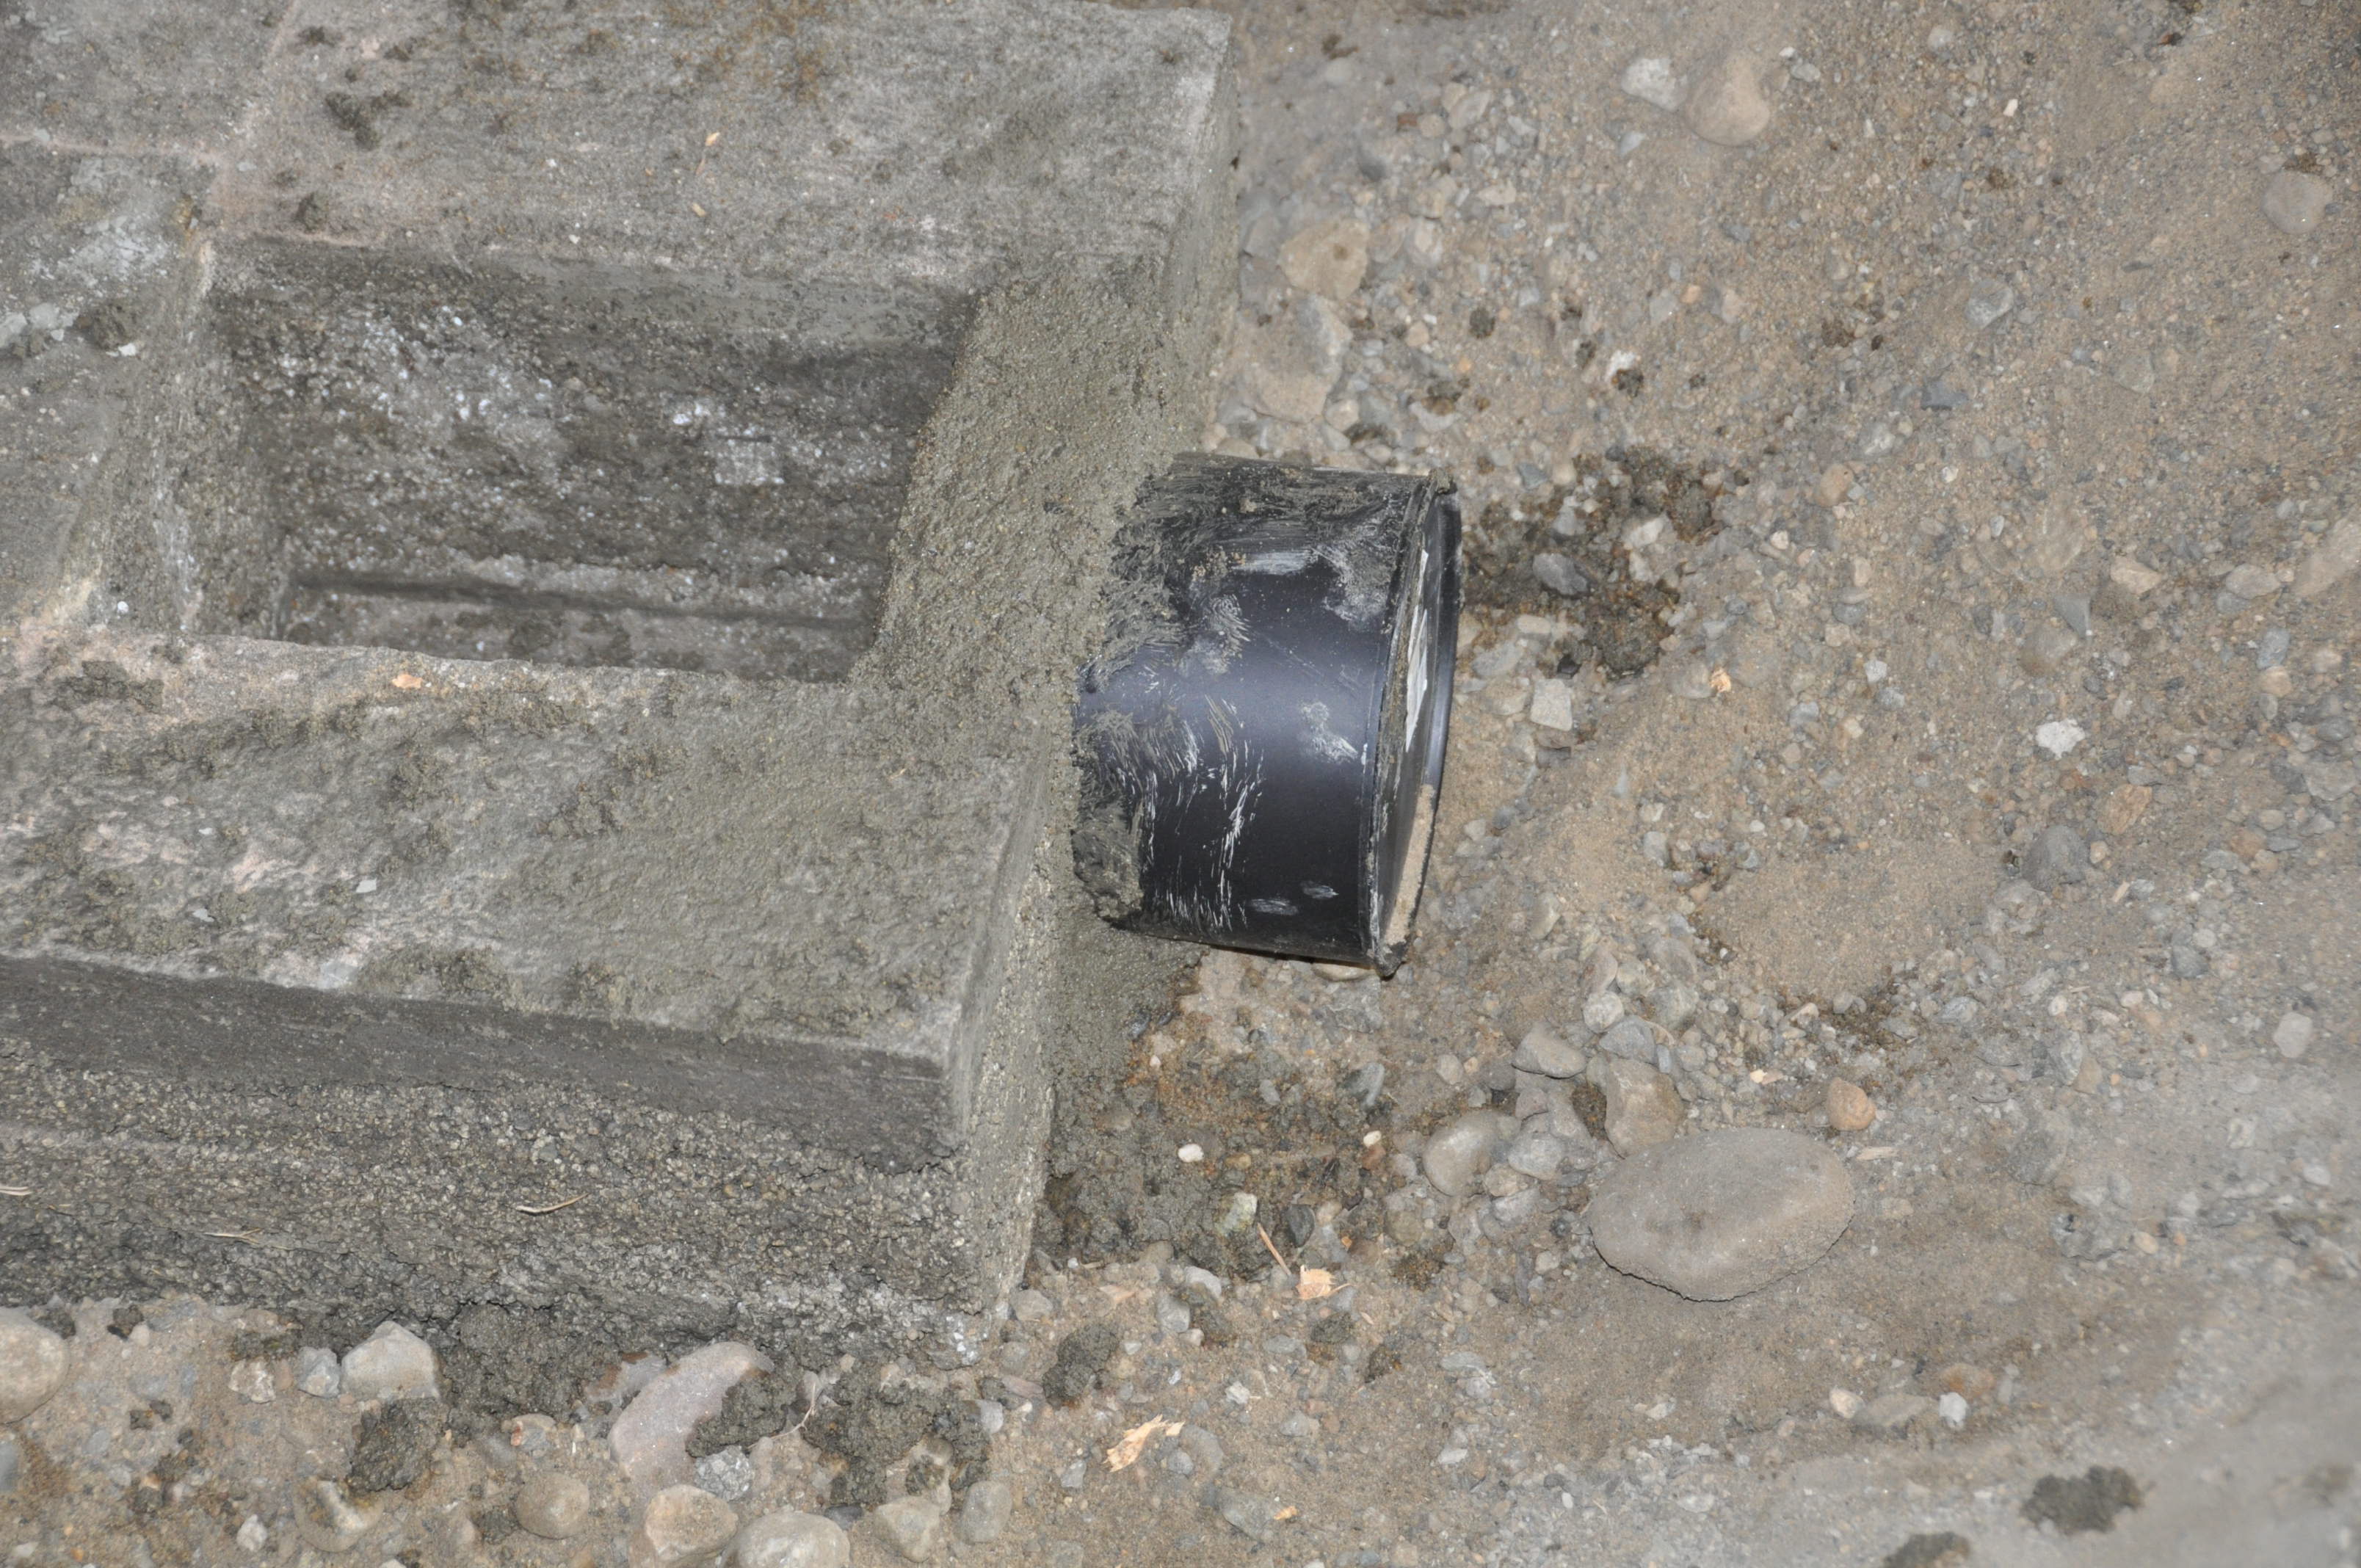 rocket mass heater … hit a brick wall